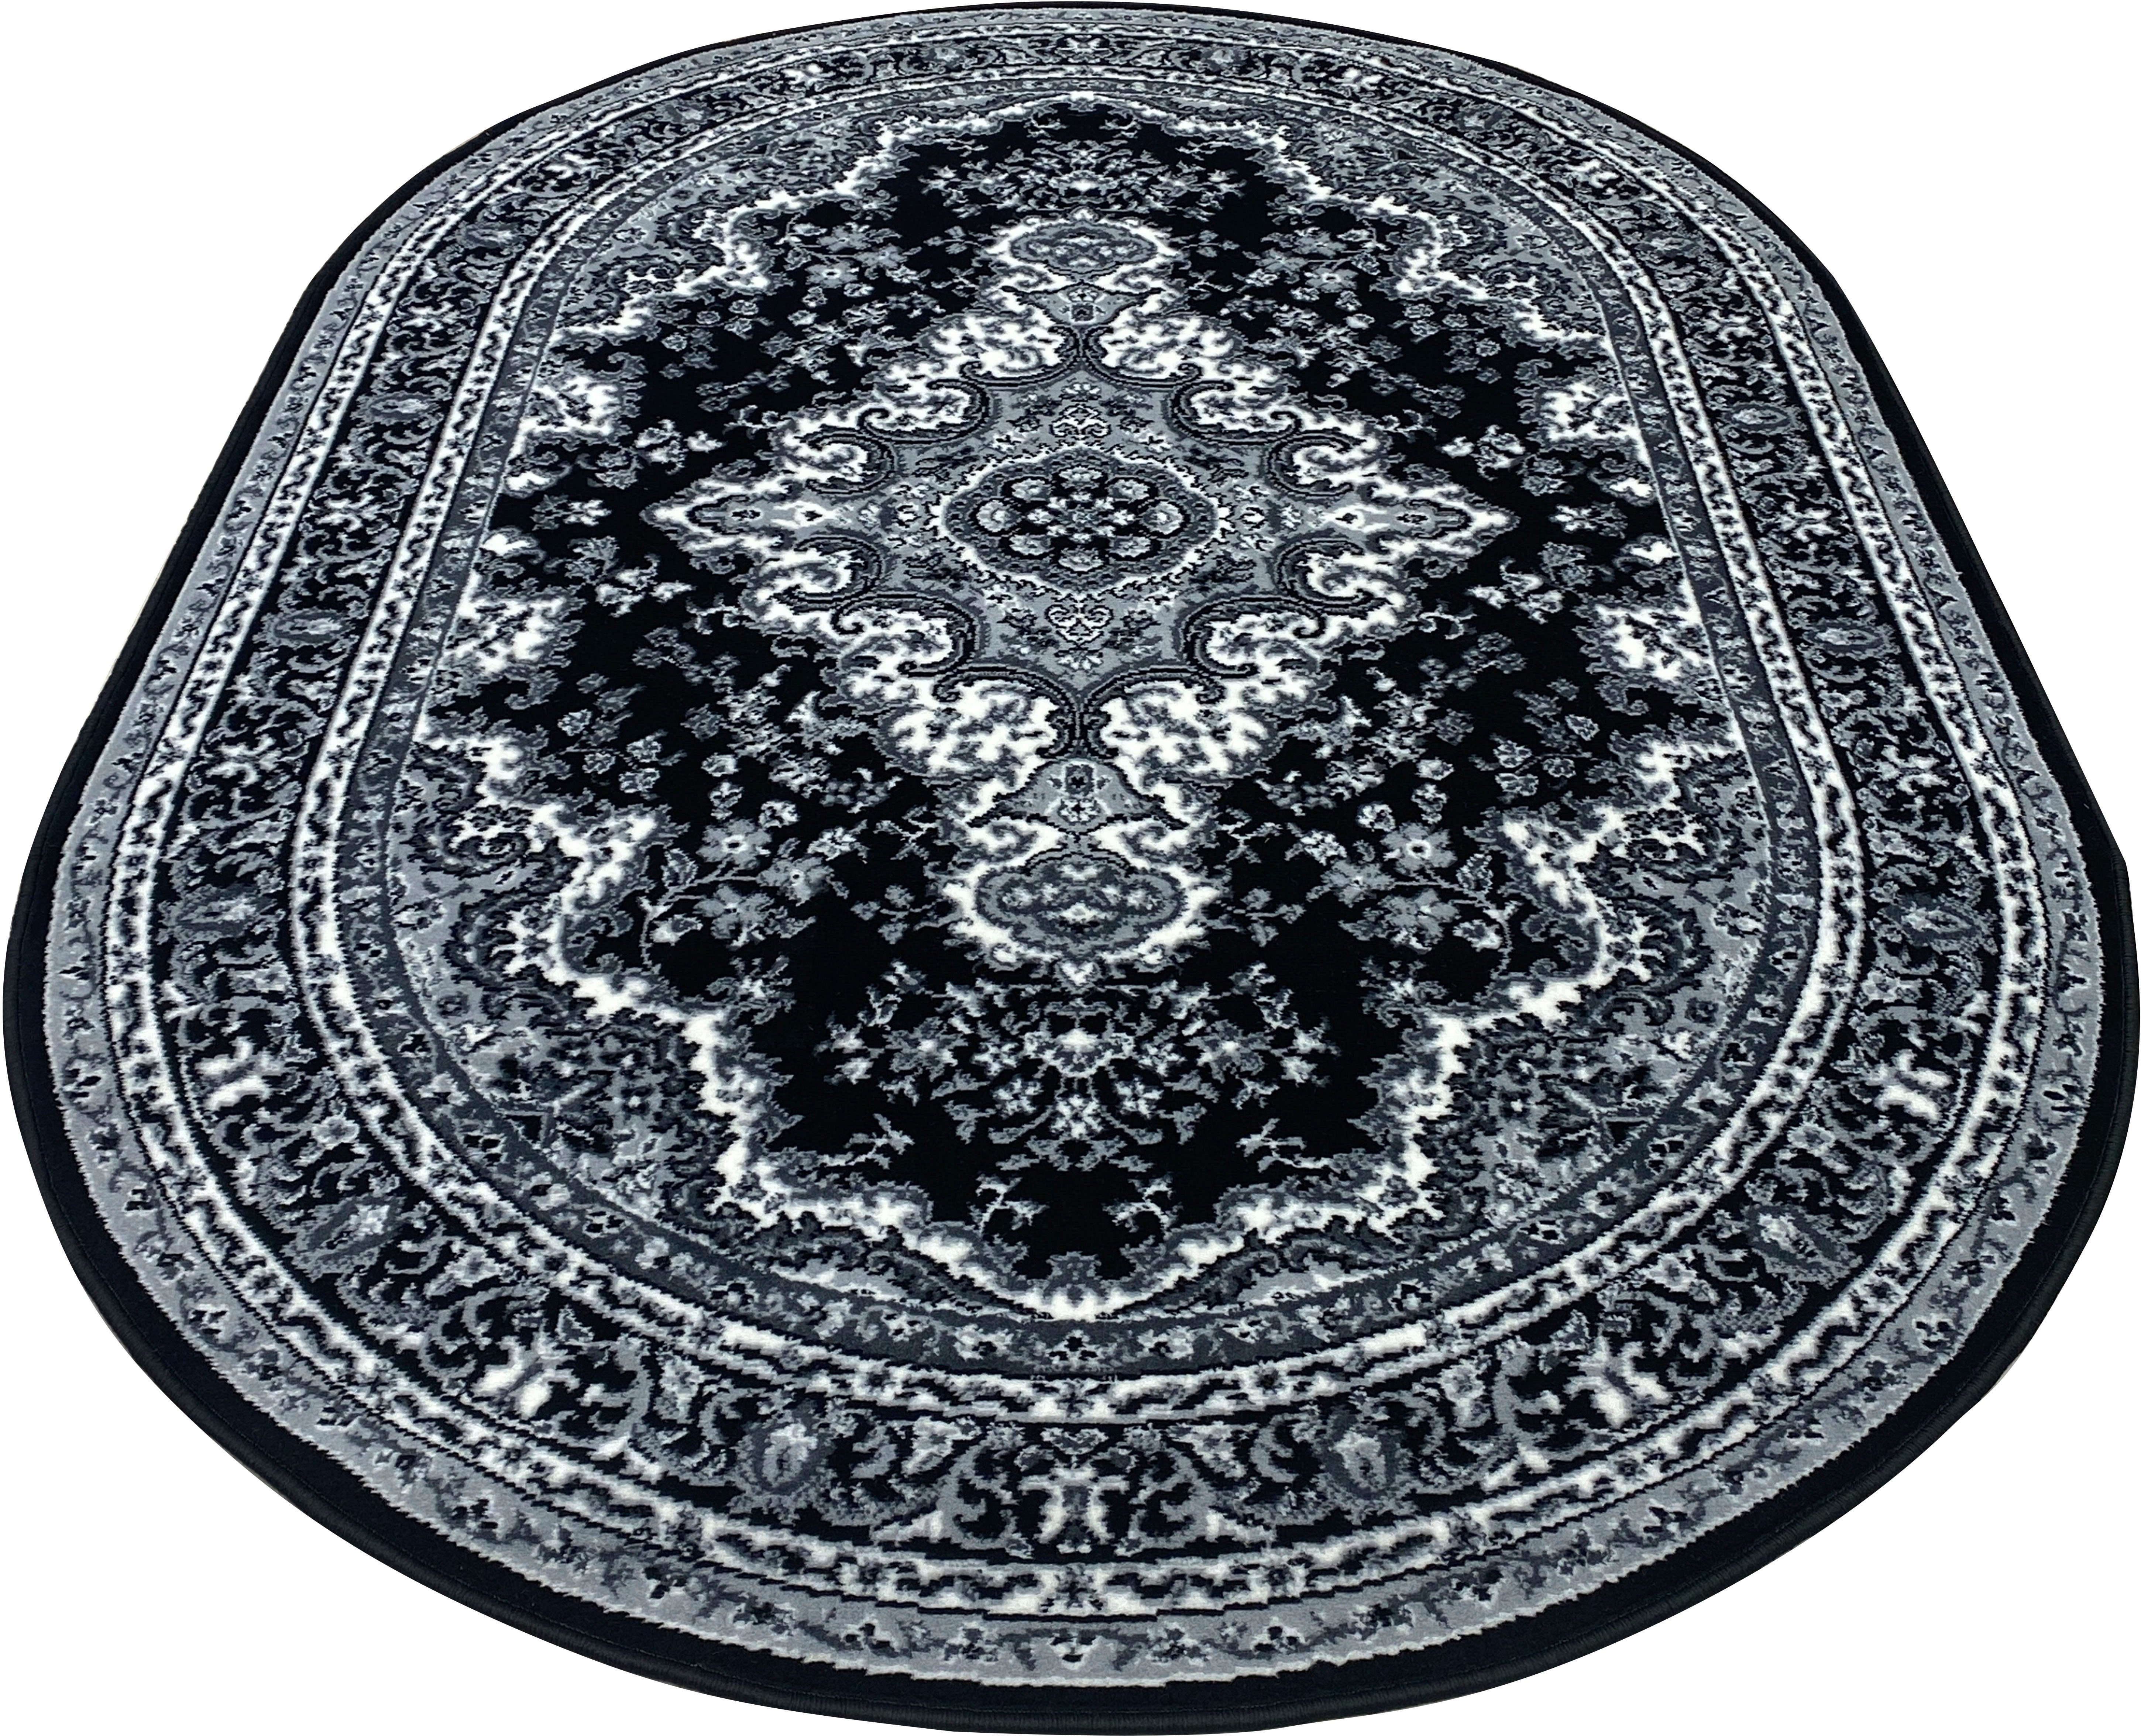 Teppich Oriental, Home affaire, oval, Höhe: 7 mm, Orient-Optik, mit Bordüre, Kurzflor, pflegeleicht, elegant grau